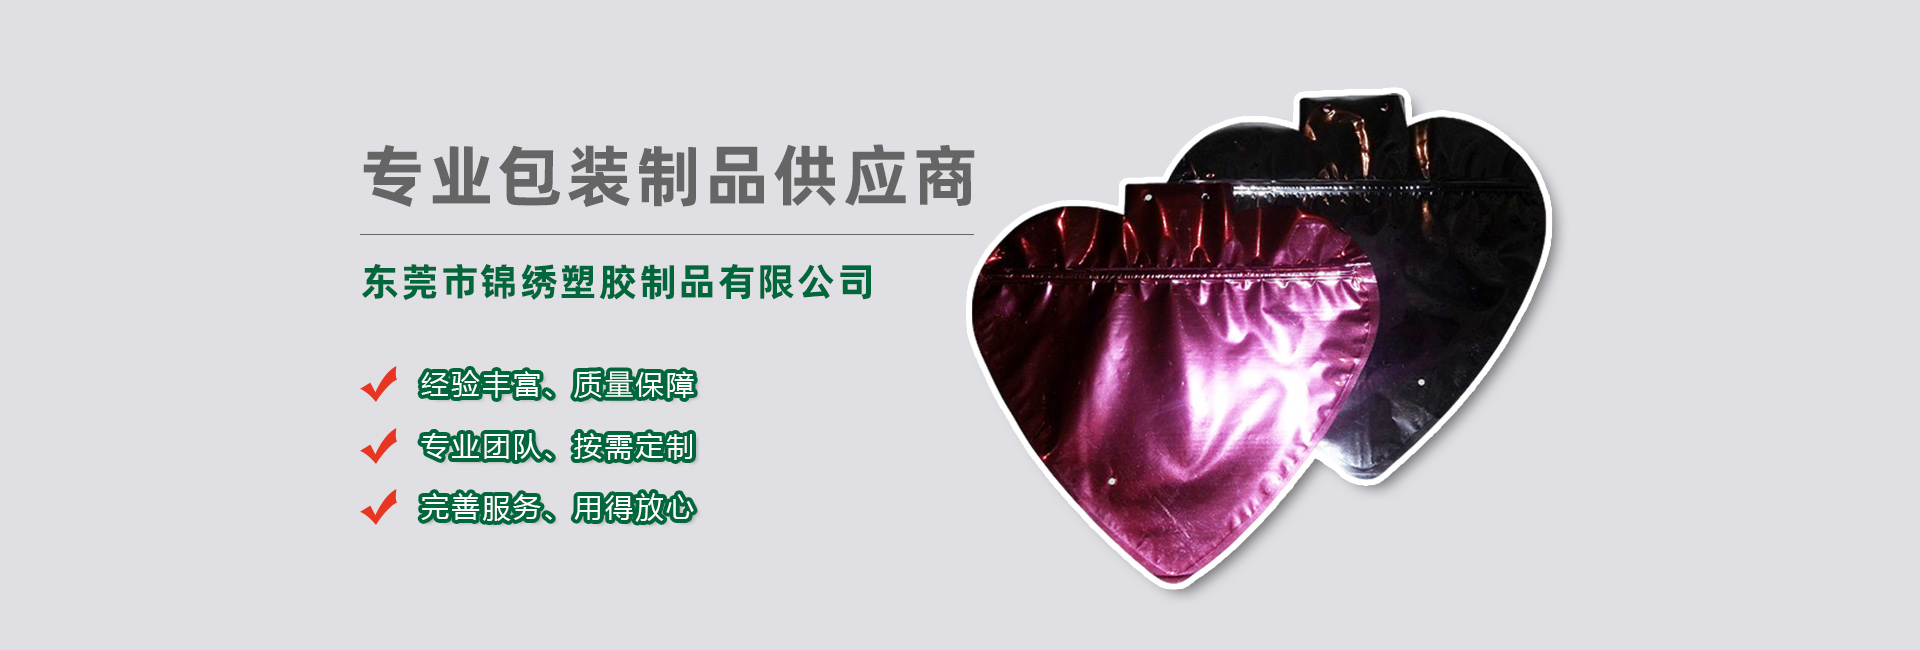 河东食品袋banner